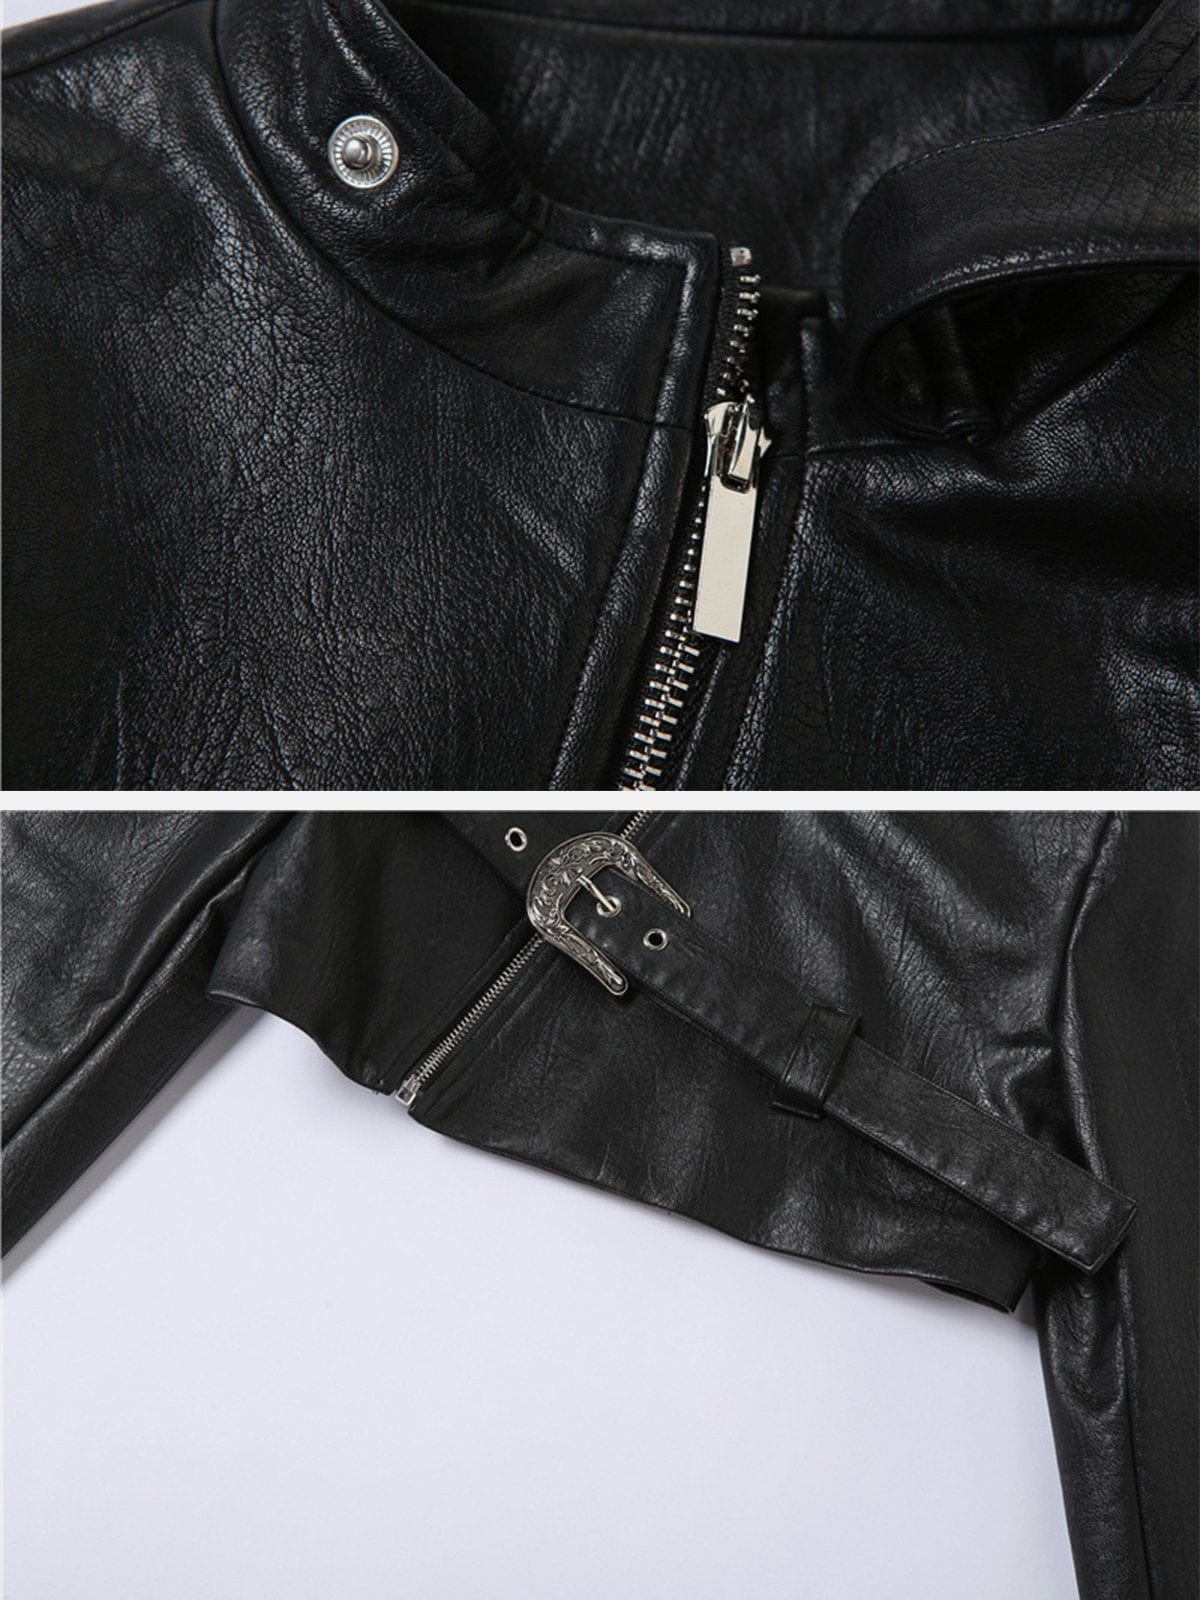 Belt Buckle PU Cropped Jacket Streetwear Brand Techwear Combat Tactical YUGEN THEORY